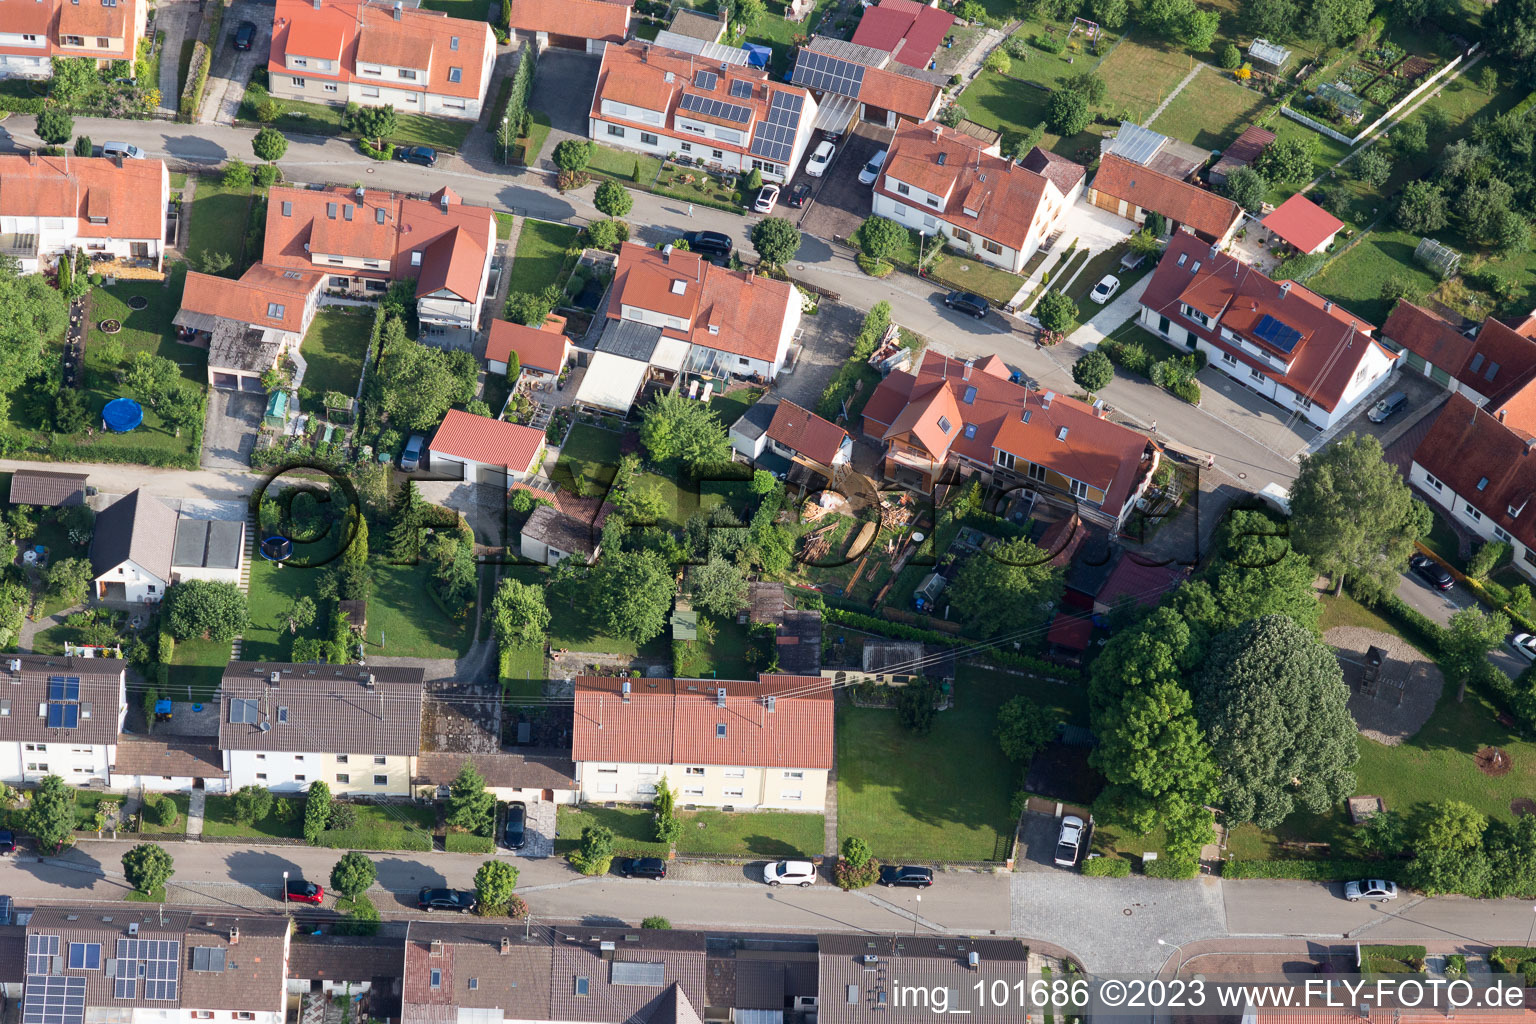 Riedlingen im Bundesland Bayern, Deutschland aus der Drohnenperspektive